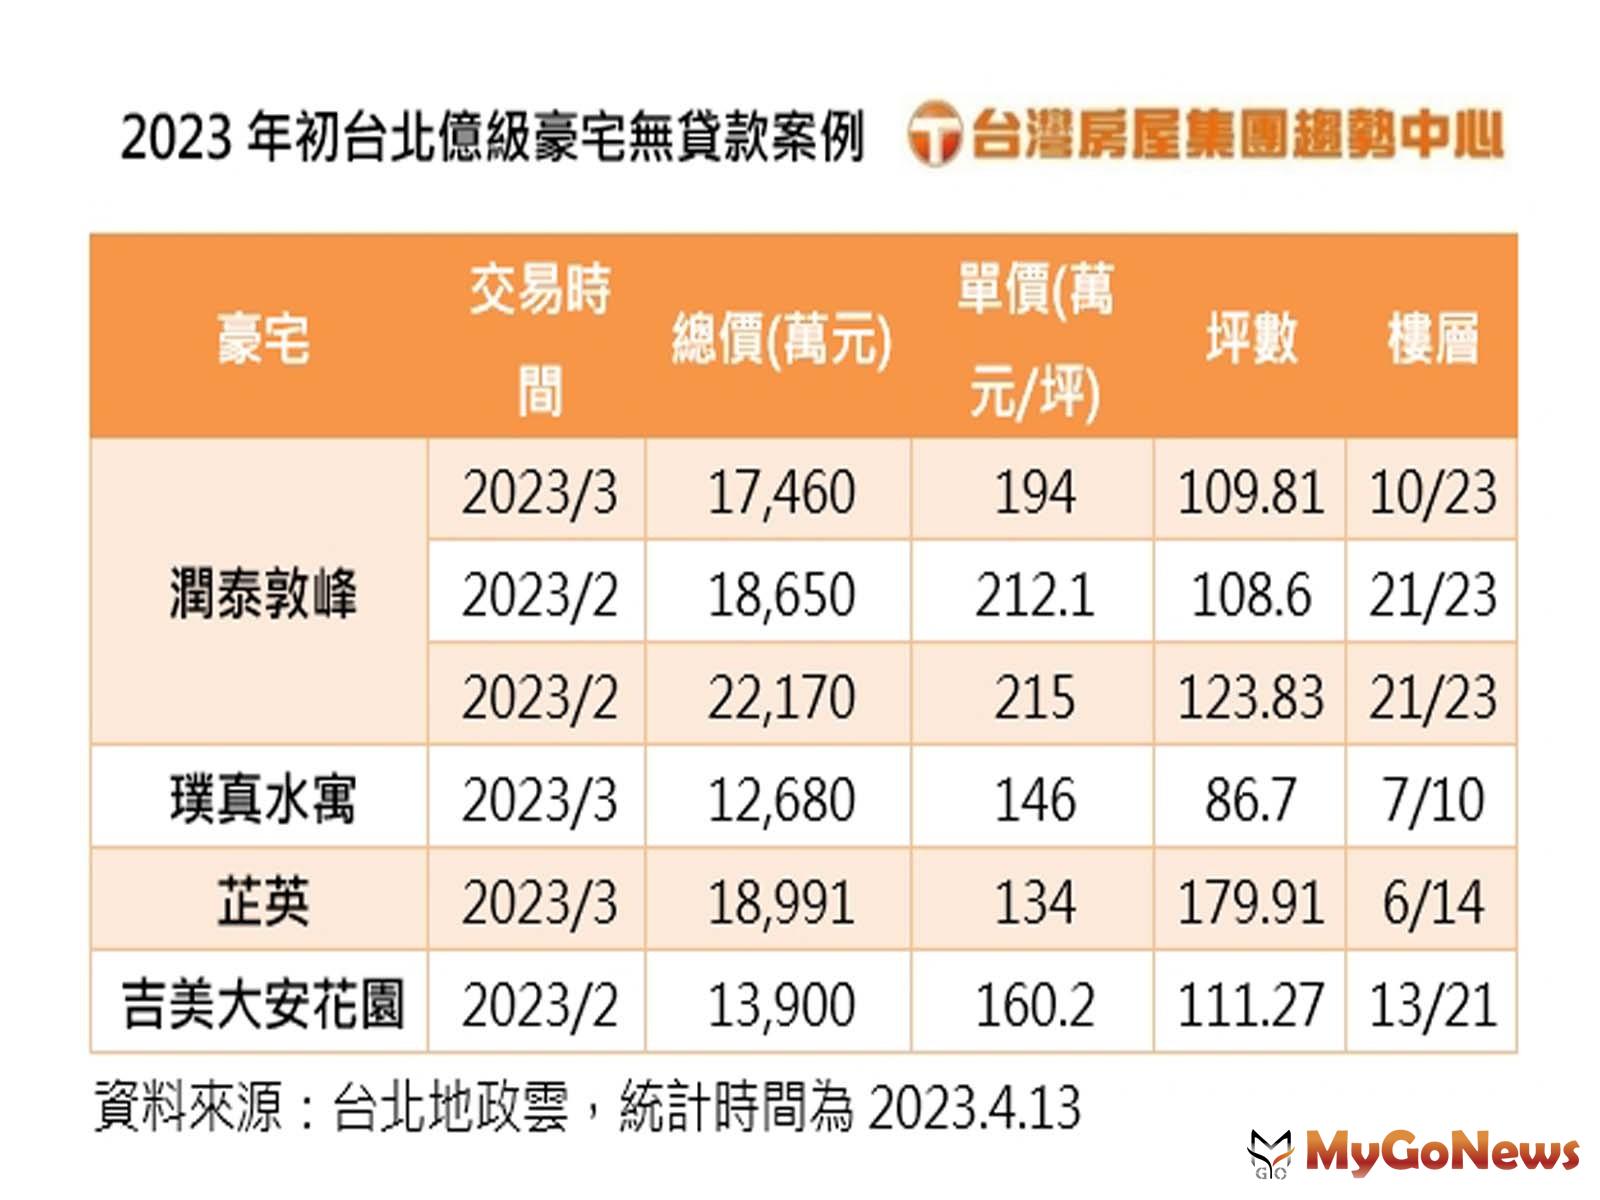 2023年初台北億級豪宅無貸款案例(圖/台灣房屋提供) MyGoNews房地產新聞 市場快訊